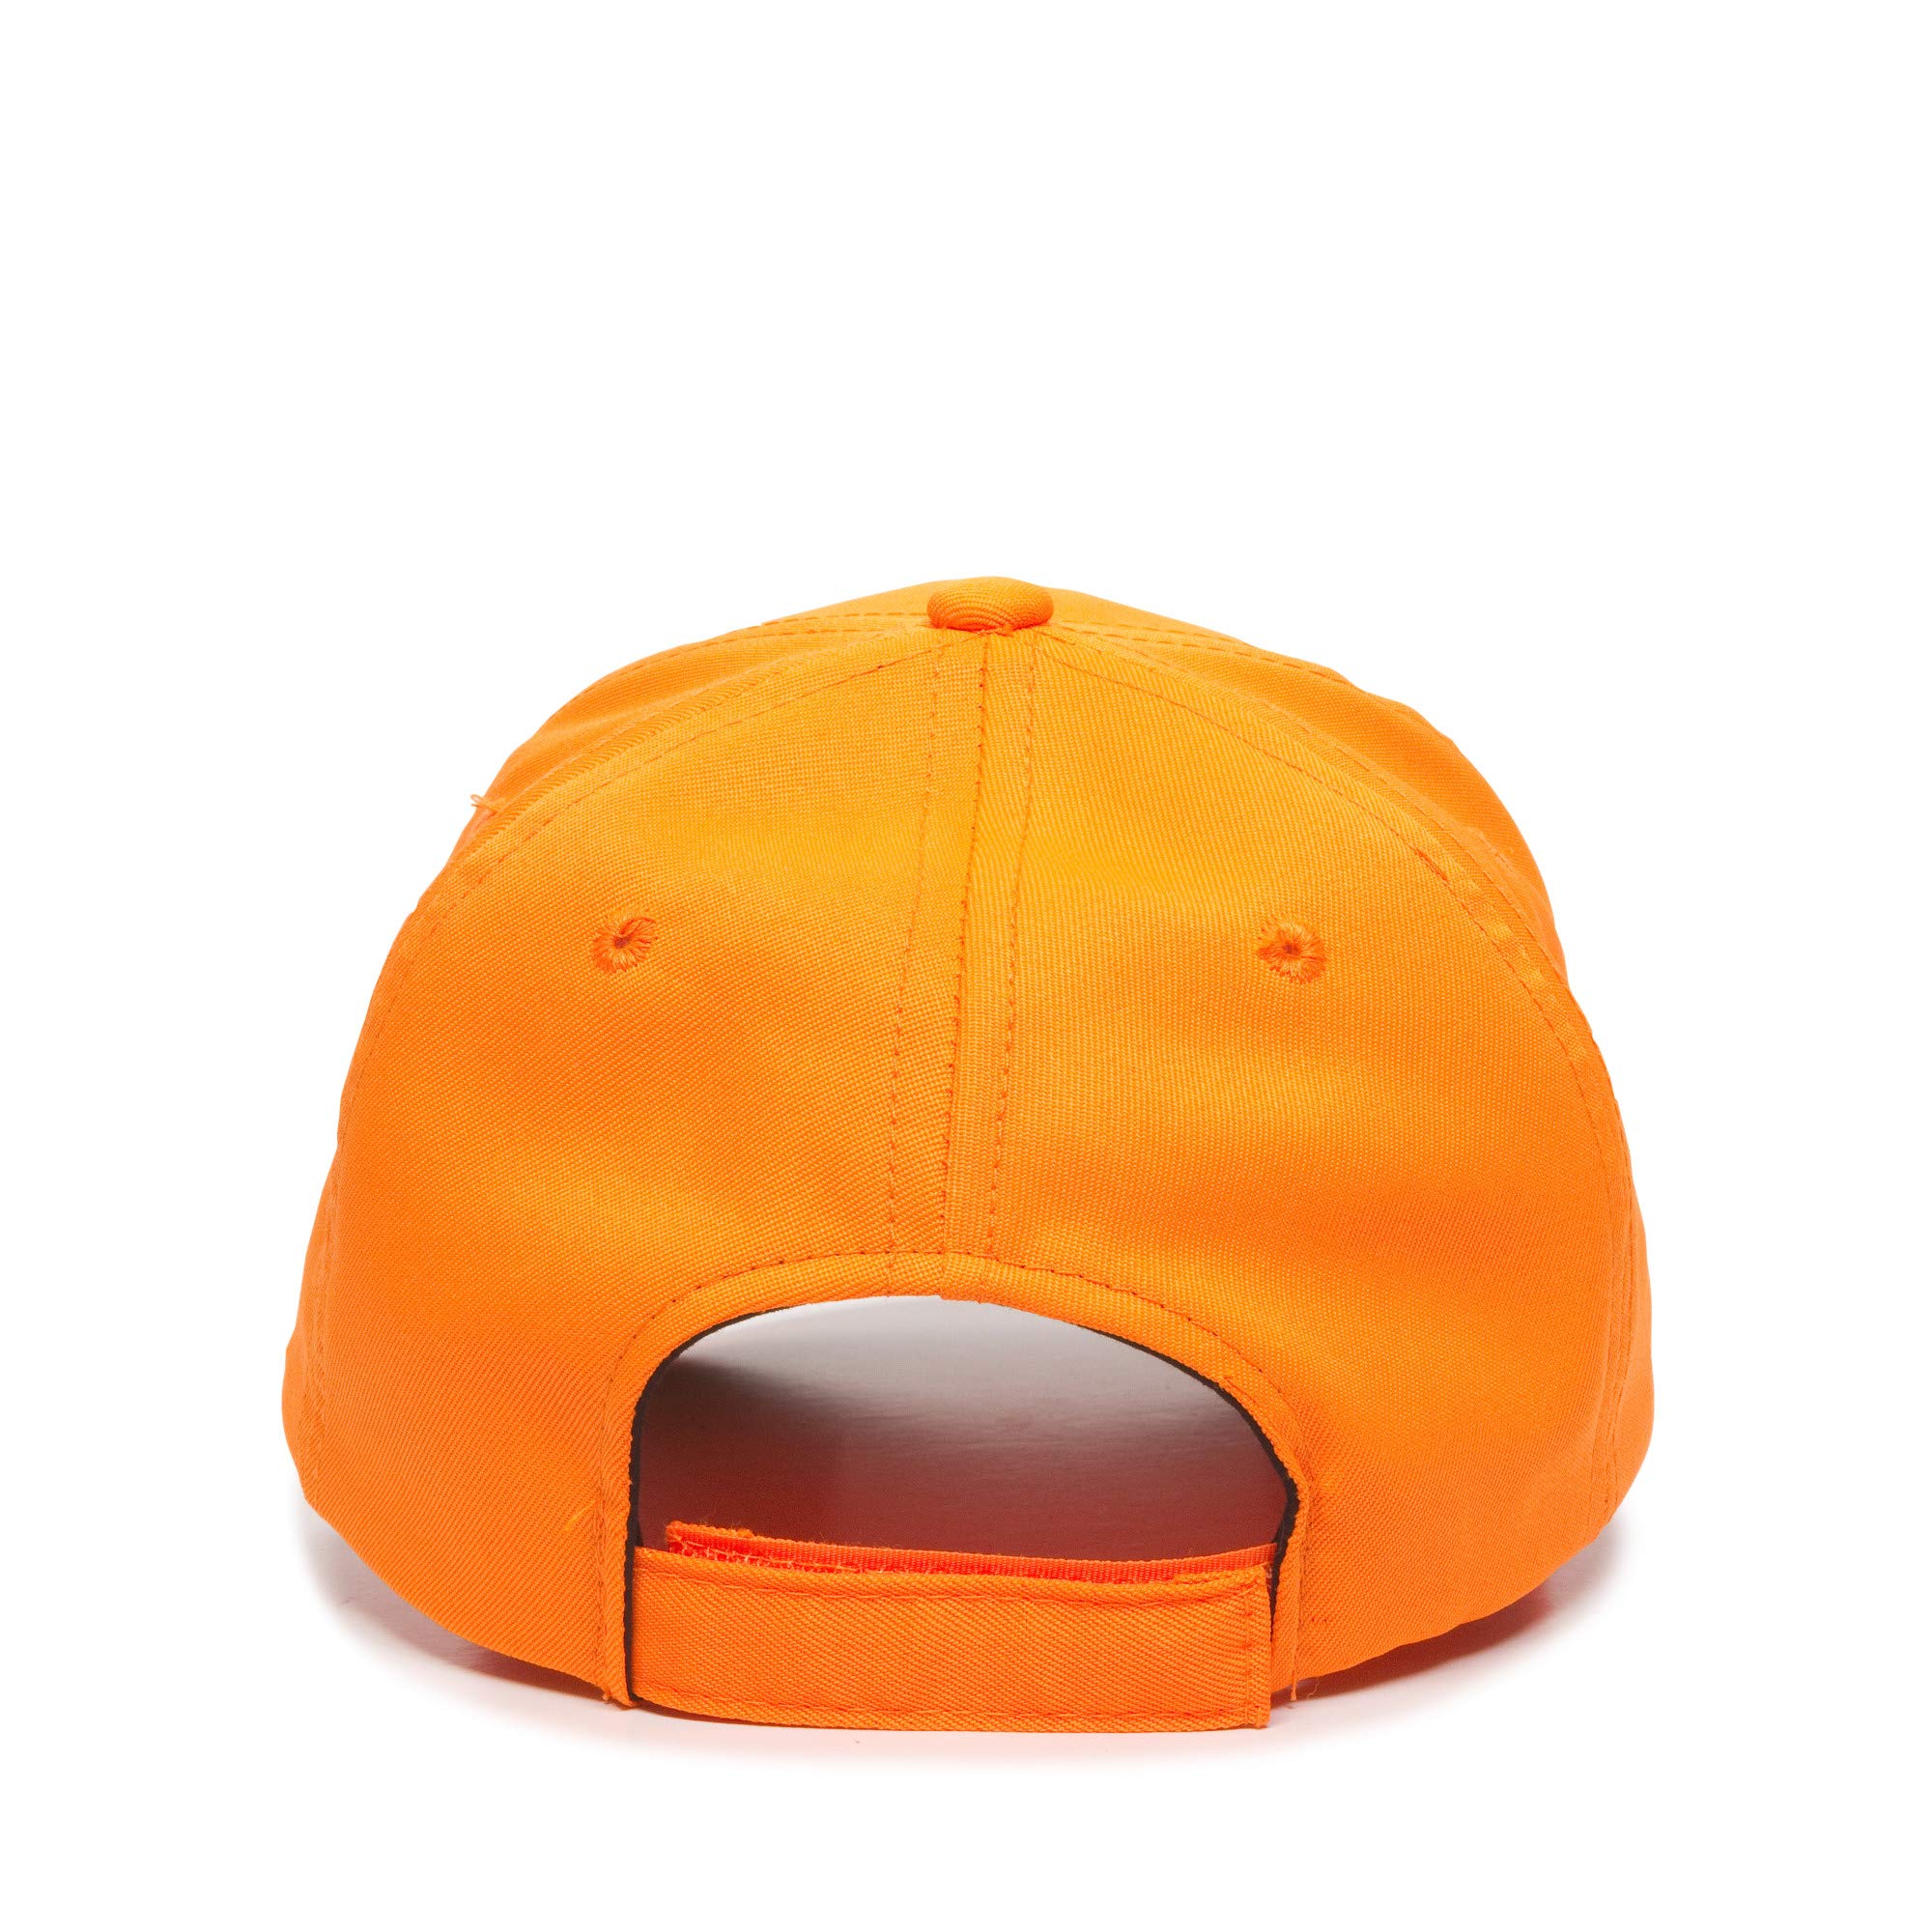 Outdoor Cap mens 350 Hats and Beanies, Blaze Orange